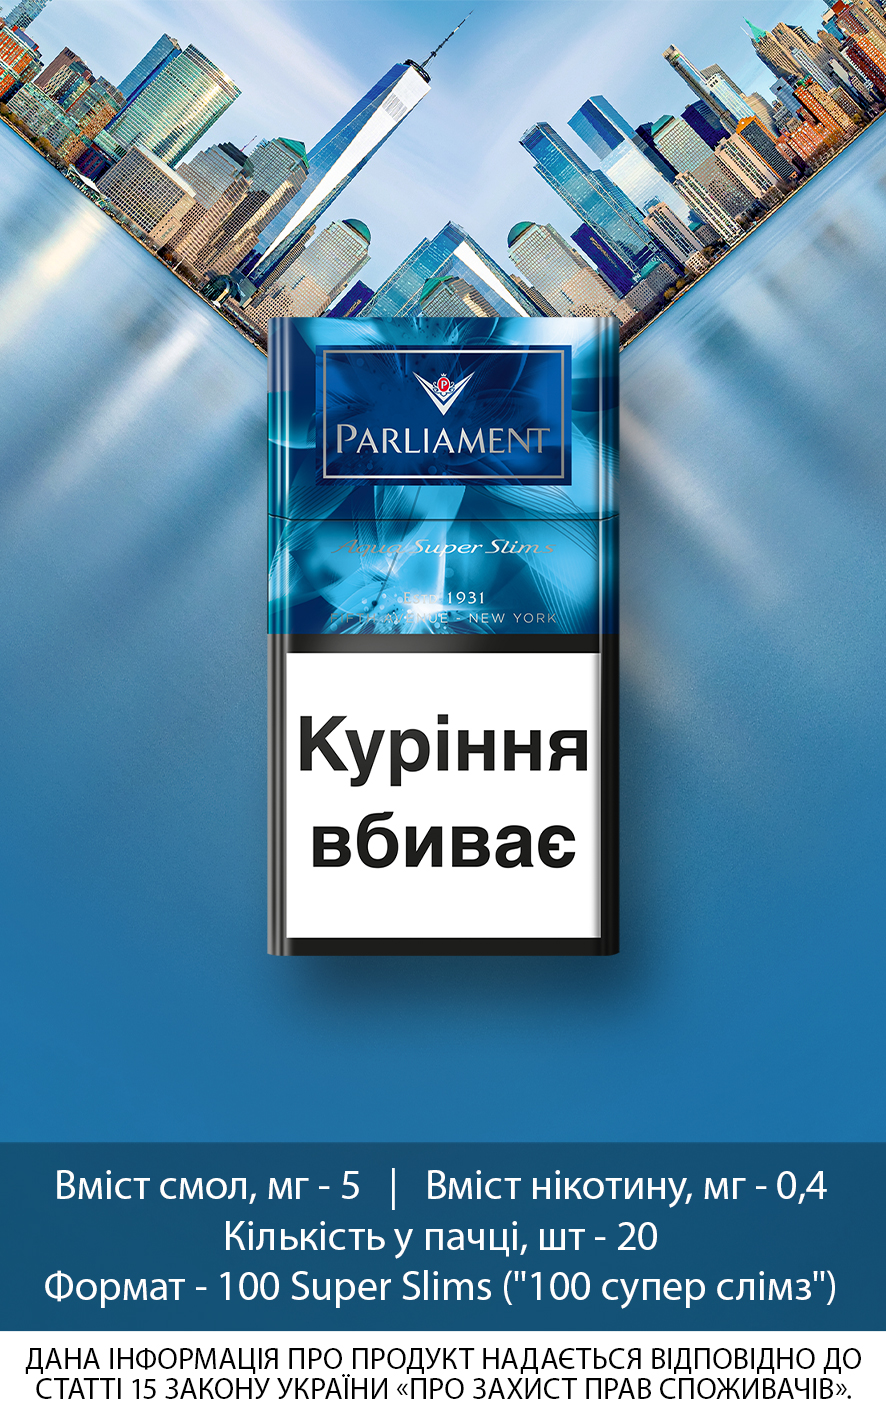 Парламент Аква Слимз / тонкие